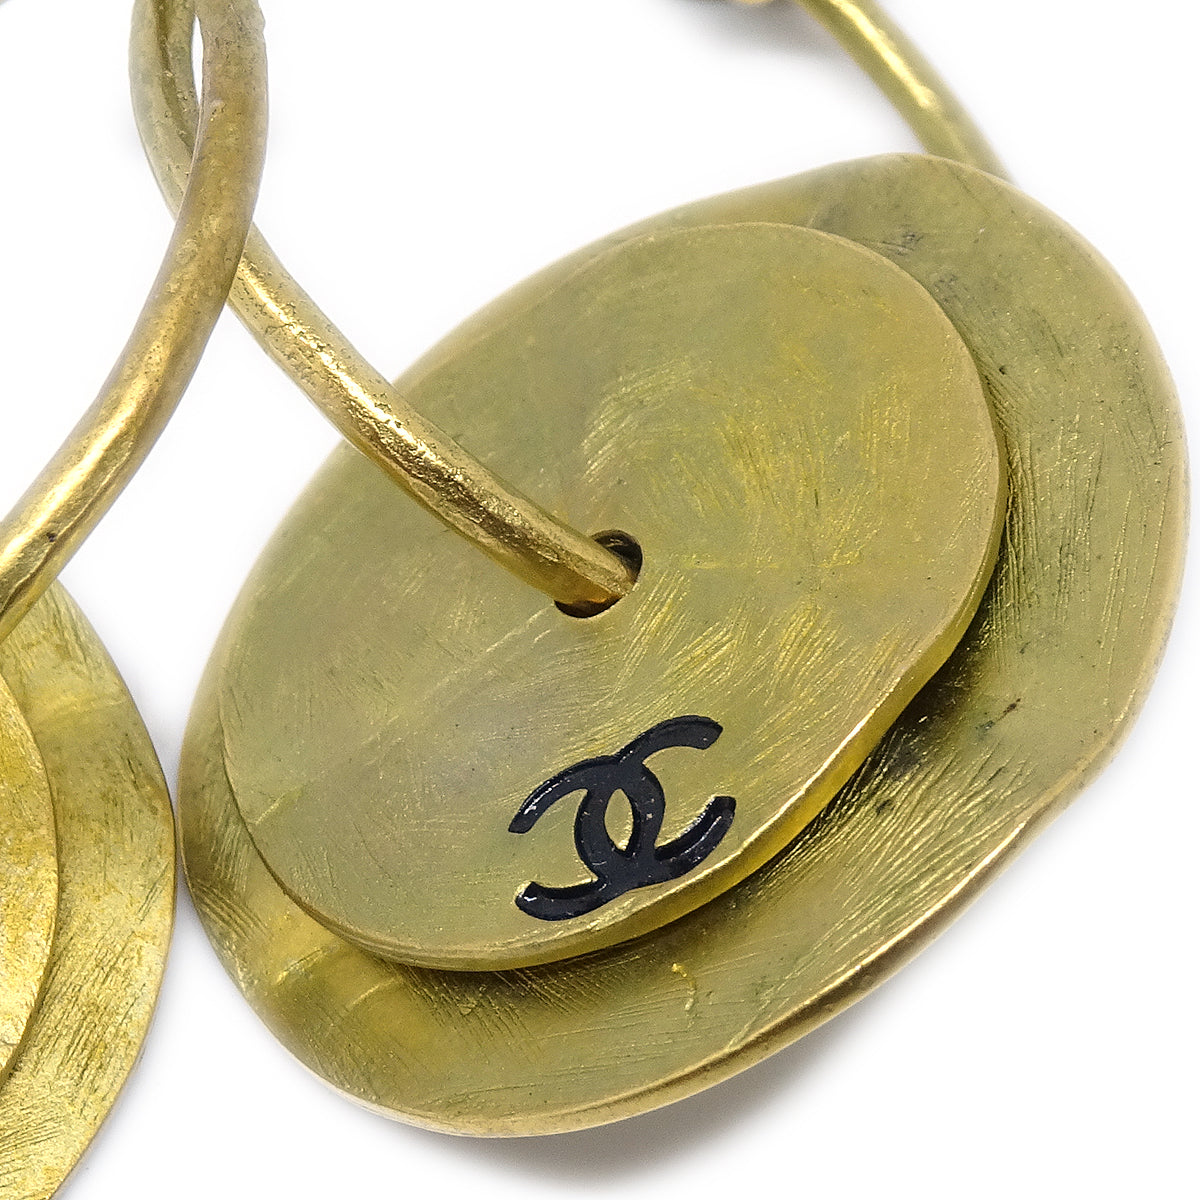 Chanel Dangle Hoop Earrings Clip-On Gold 94A